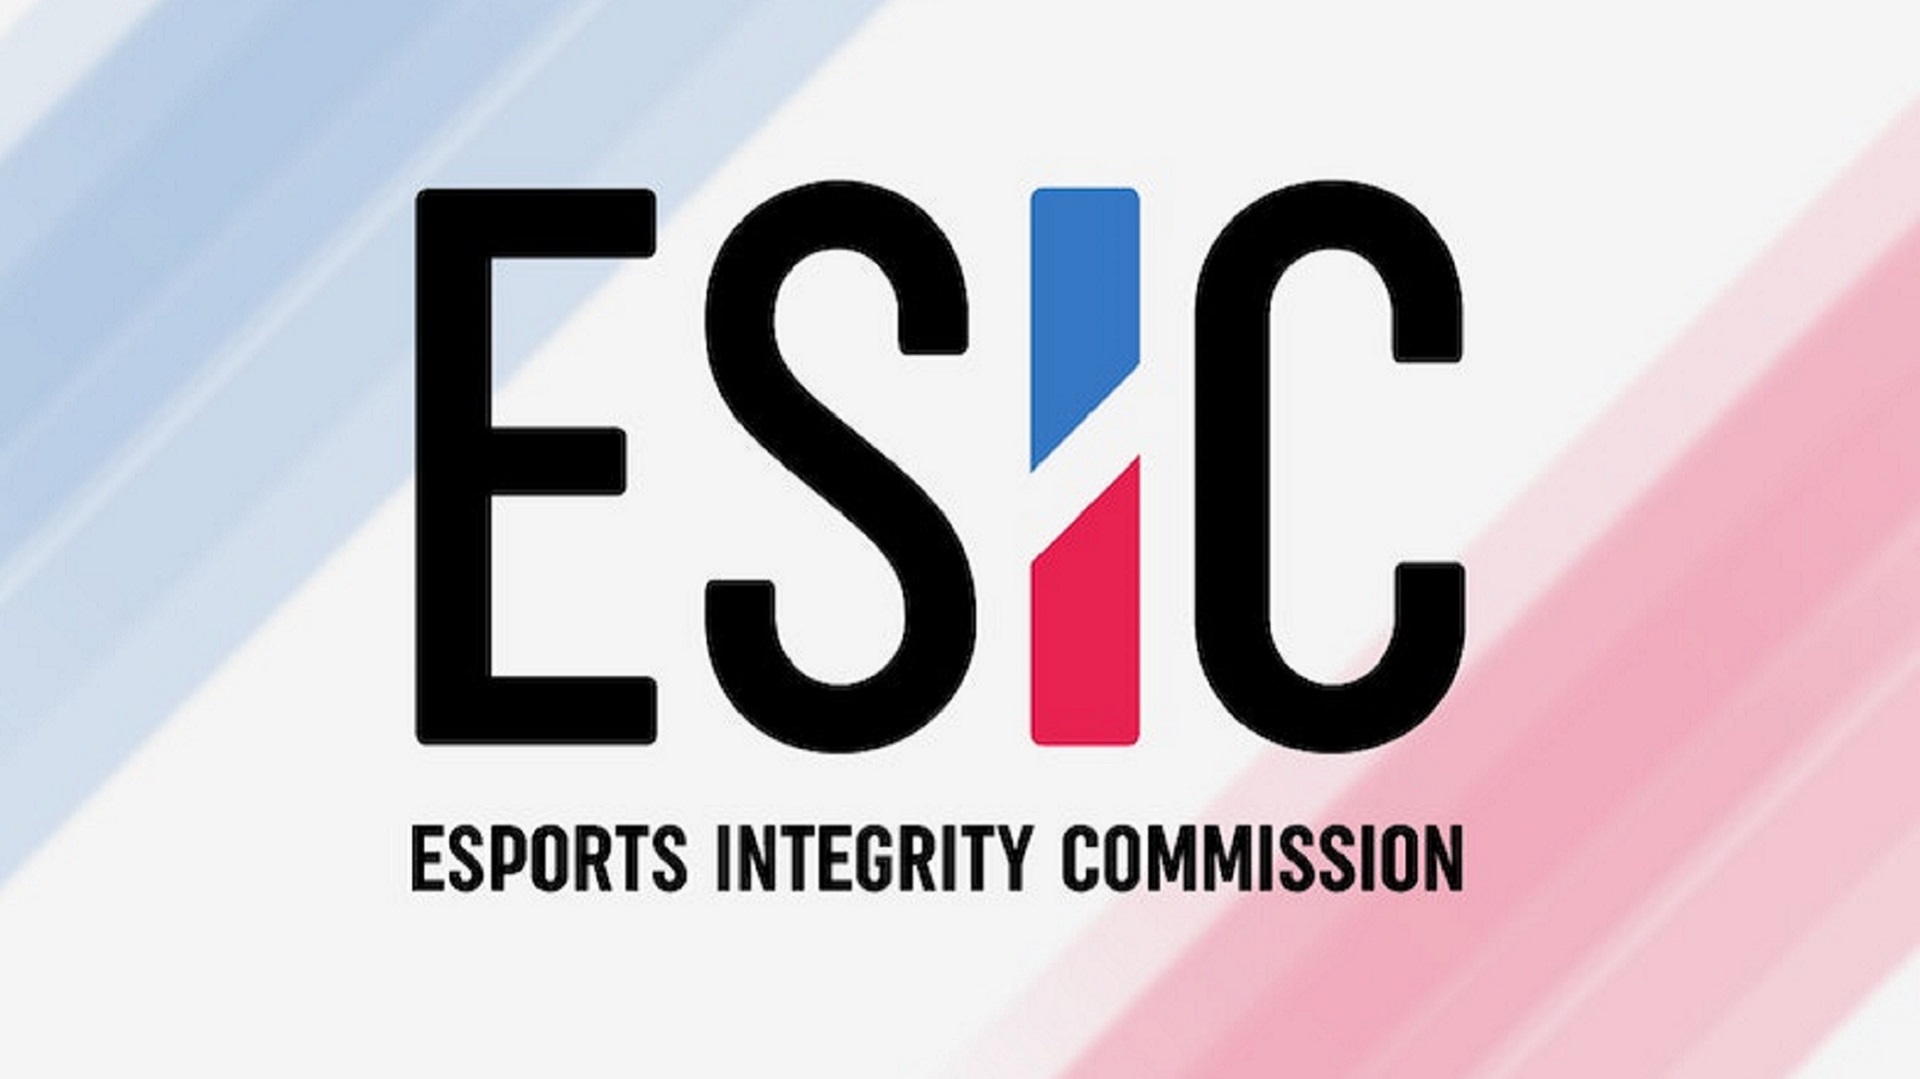 ESIC пожизненно забанила владельца Akuma и Project X Алексея Шишко за организацию договорных матчей